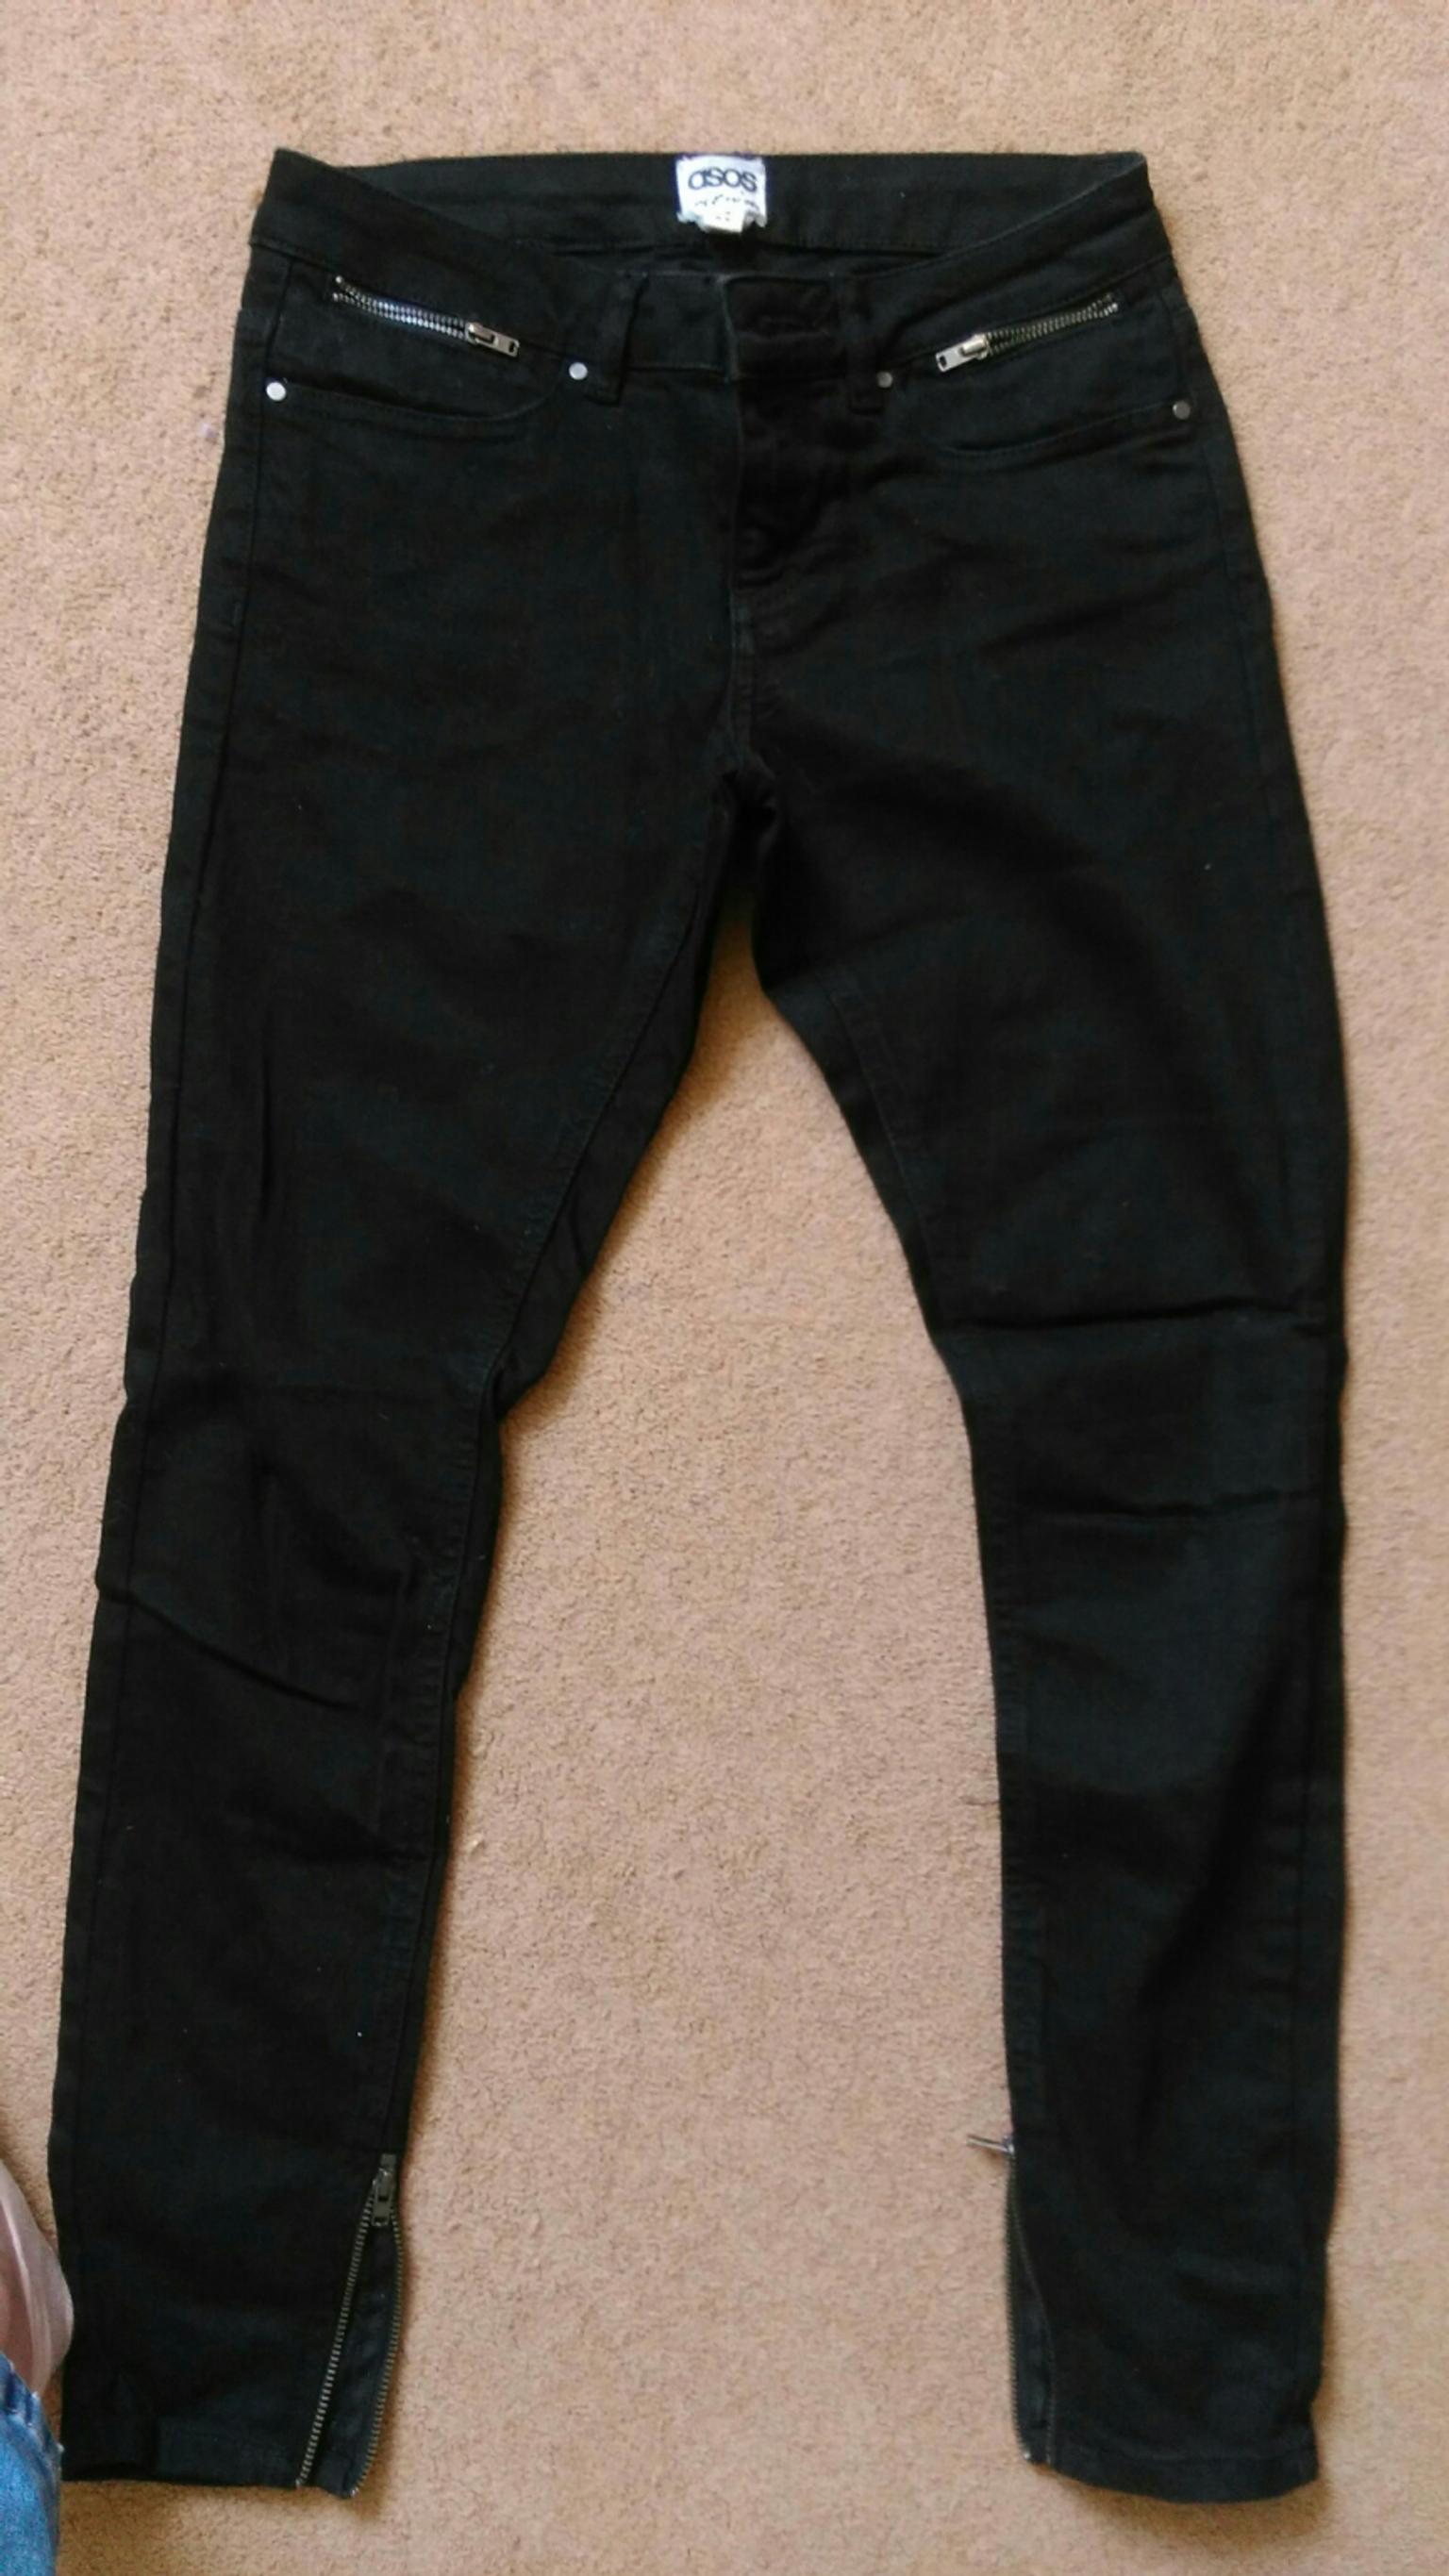 asda black jeans